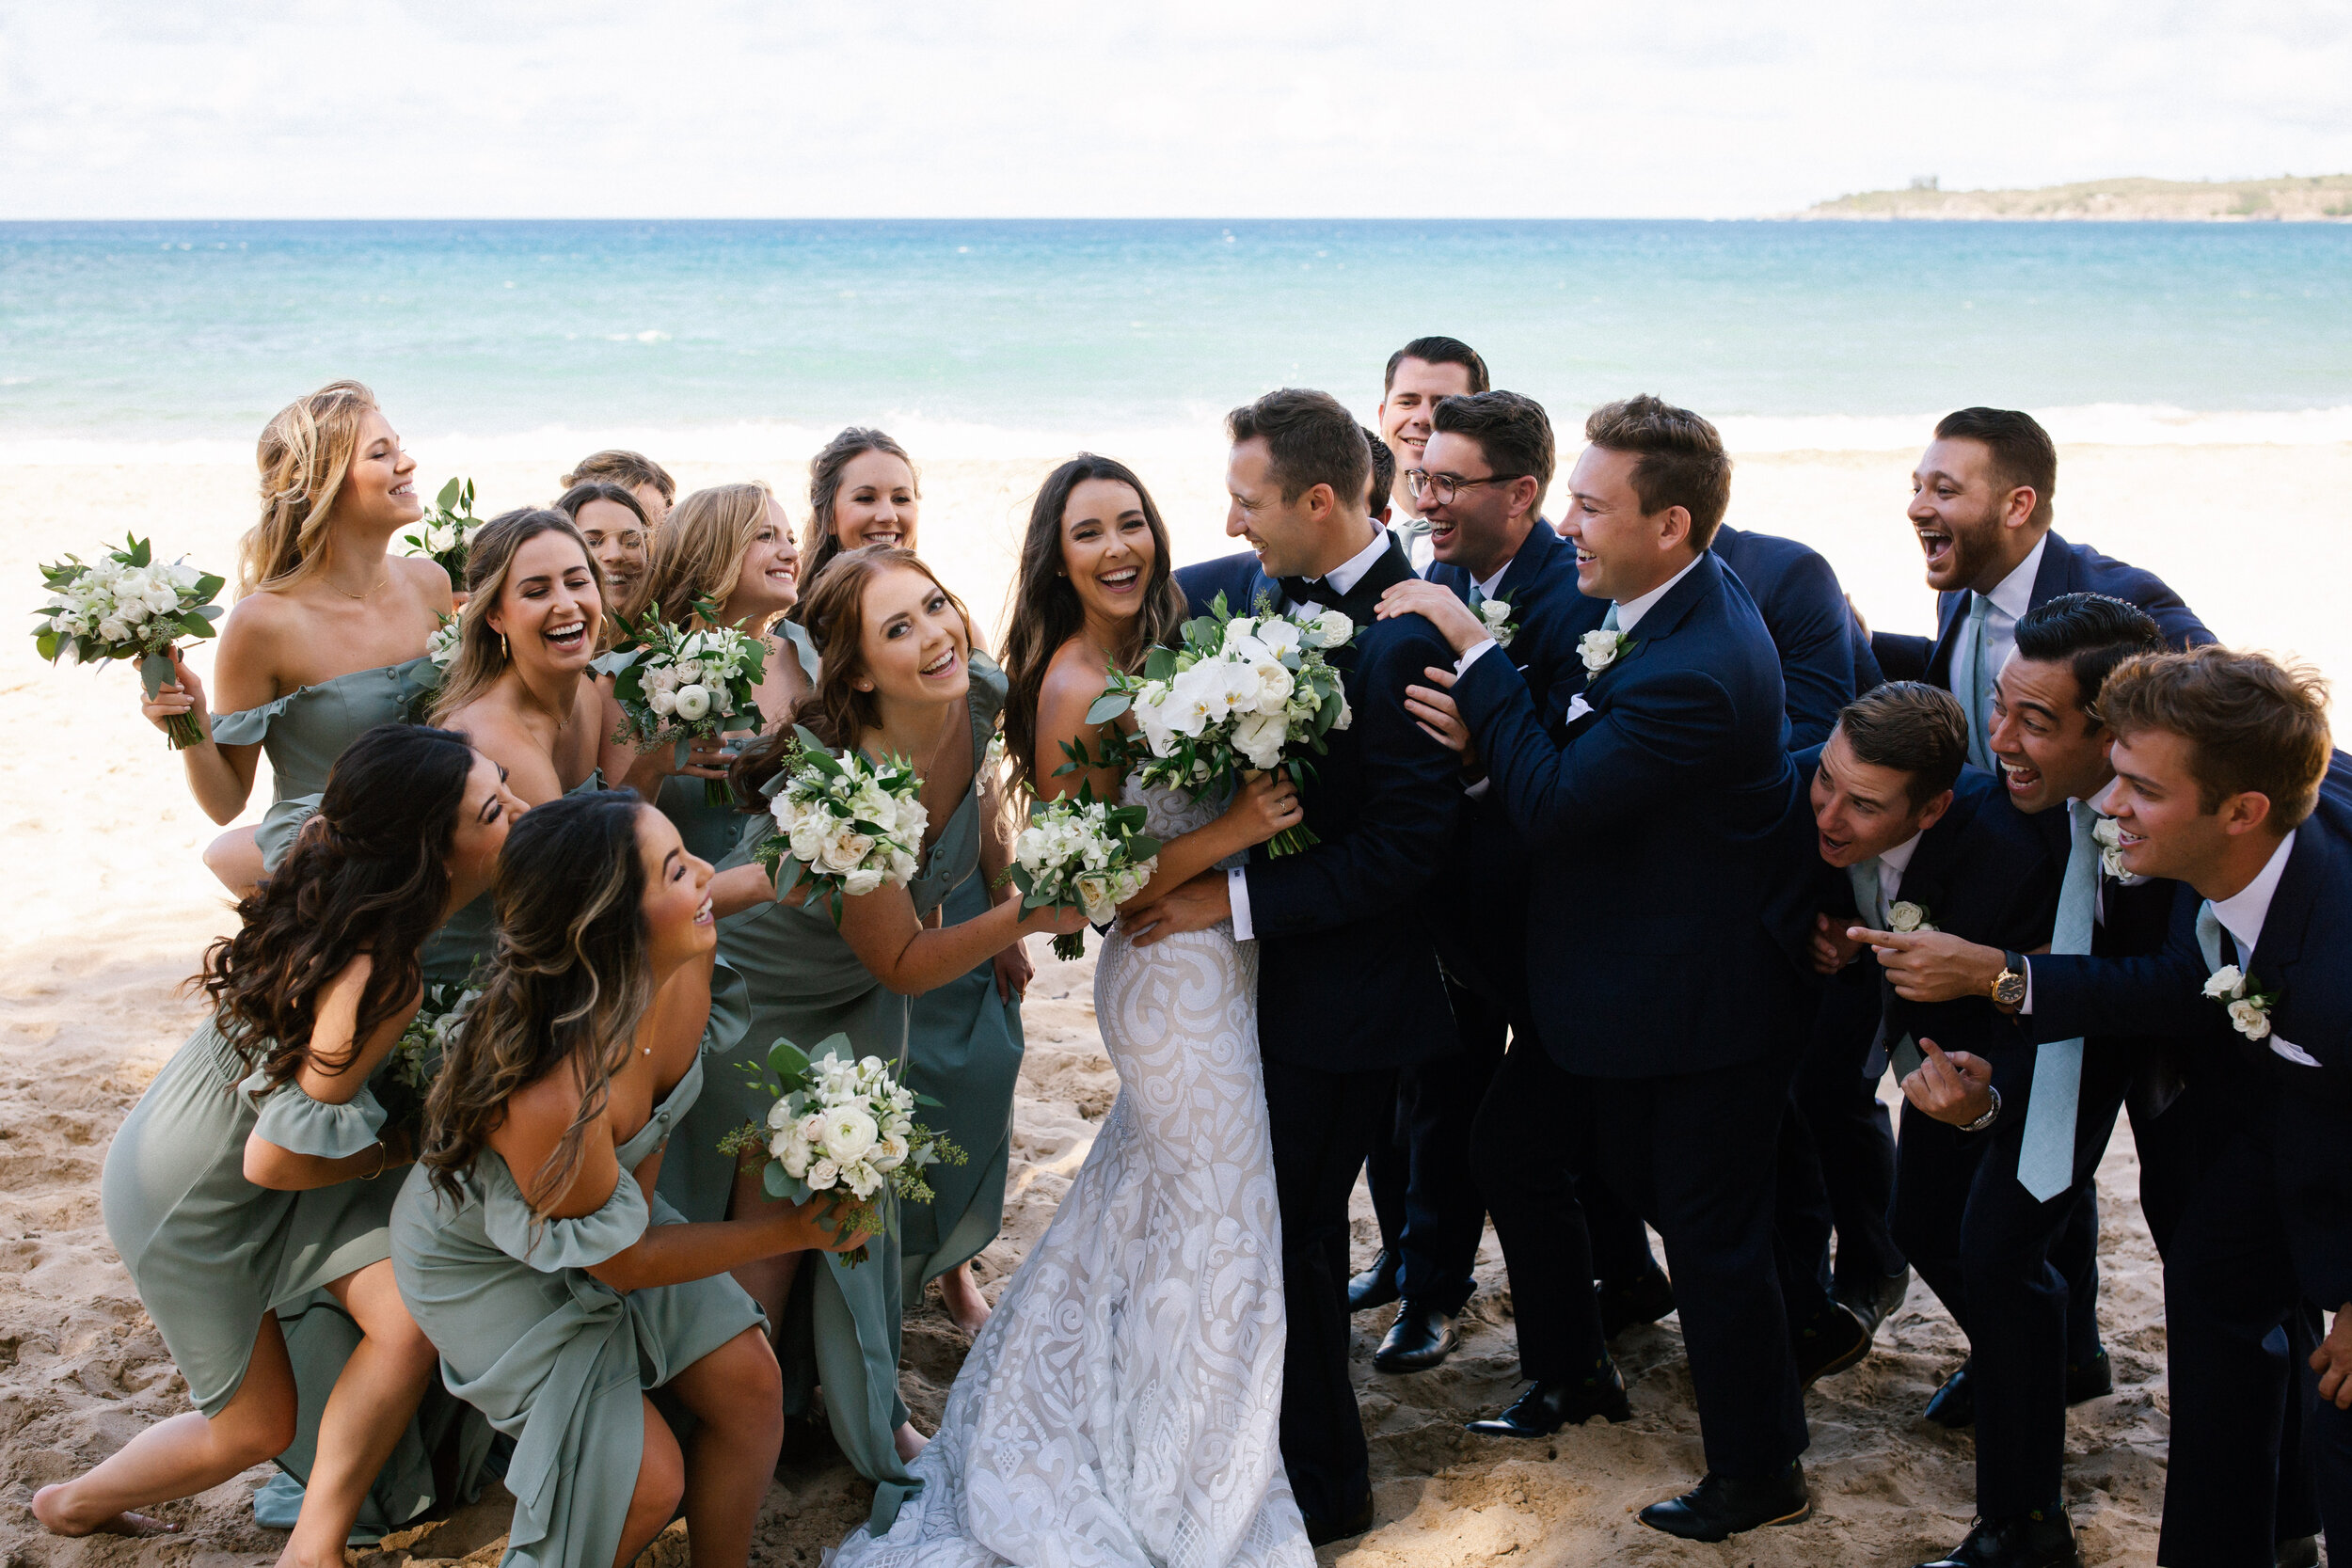 Hawaii weddings